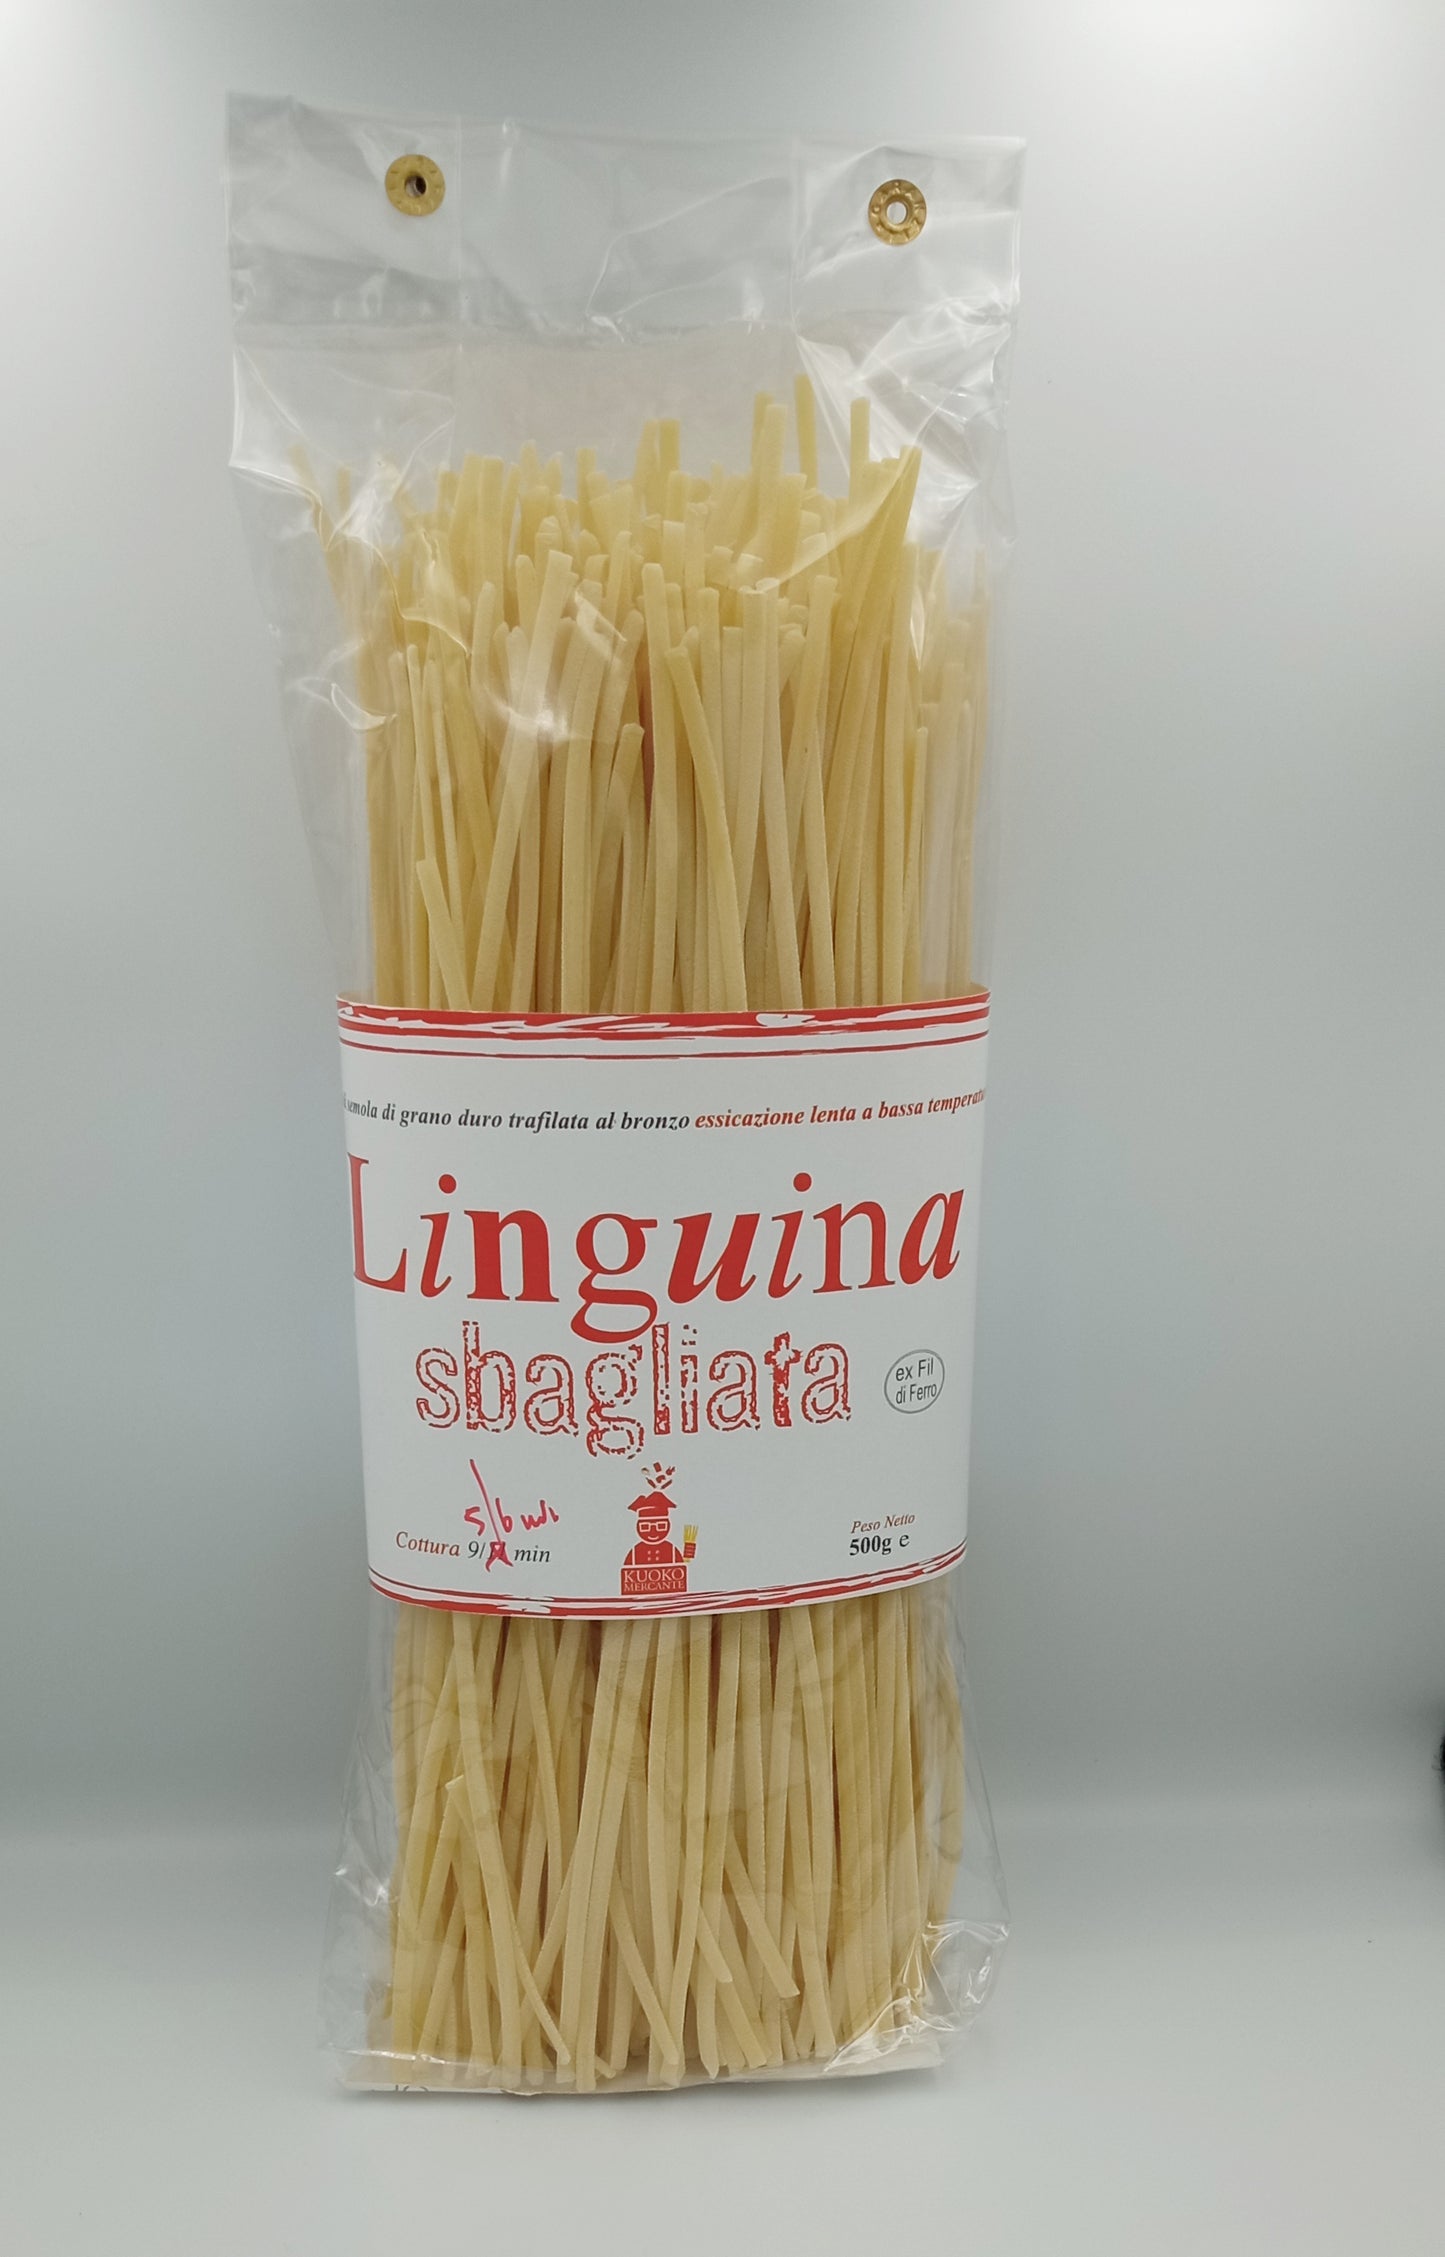 Linguina Sbagliata 500g - Drugstore Napoli